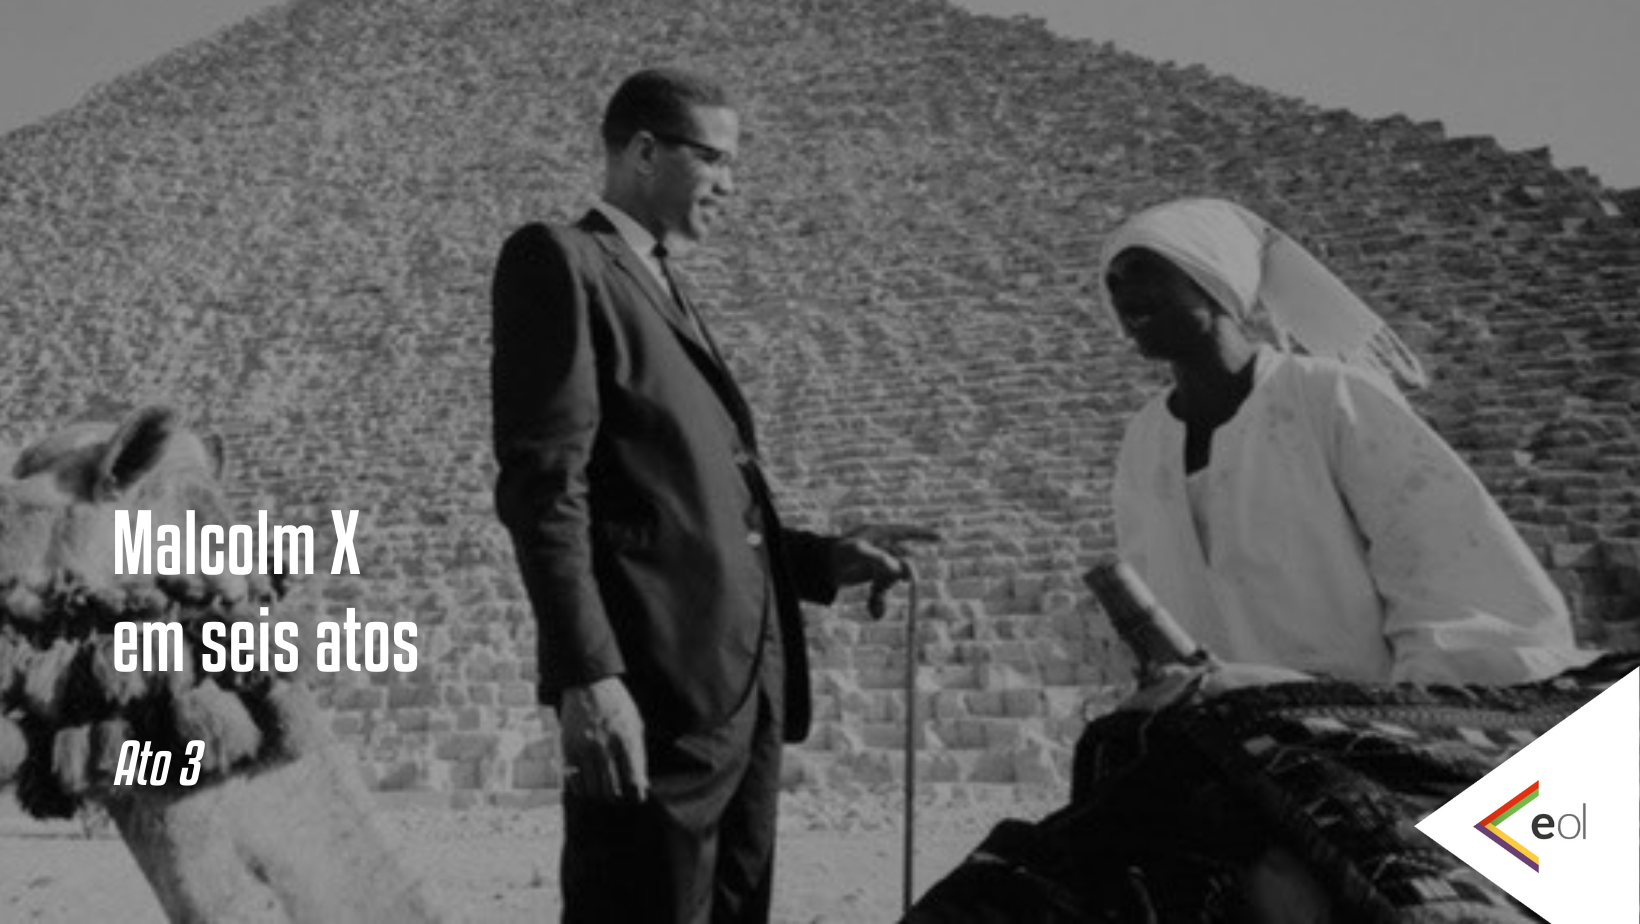 Malcolm em seis atos - Ato 3. Foto mostra ele conversando com uma mulher negra, tendo ao fundo uma pirâmide